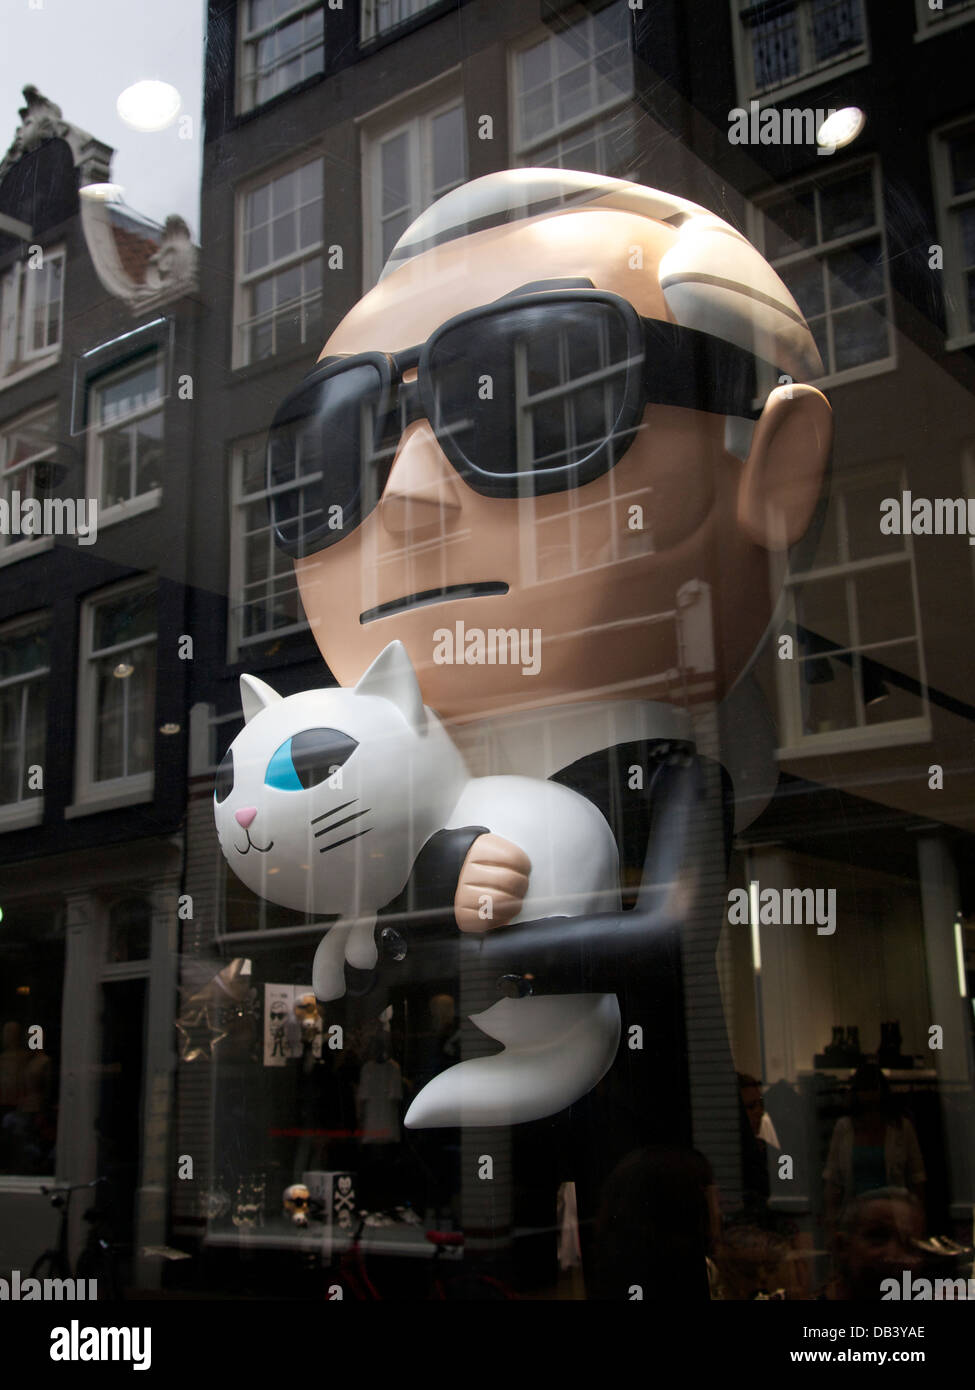 Personnage de Karl Lagerfeld dans son magasin dans la ville d'Amsterdam, Pays-Bas Banque D'Images